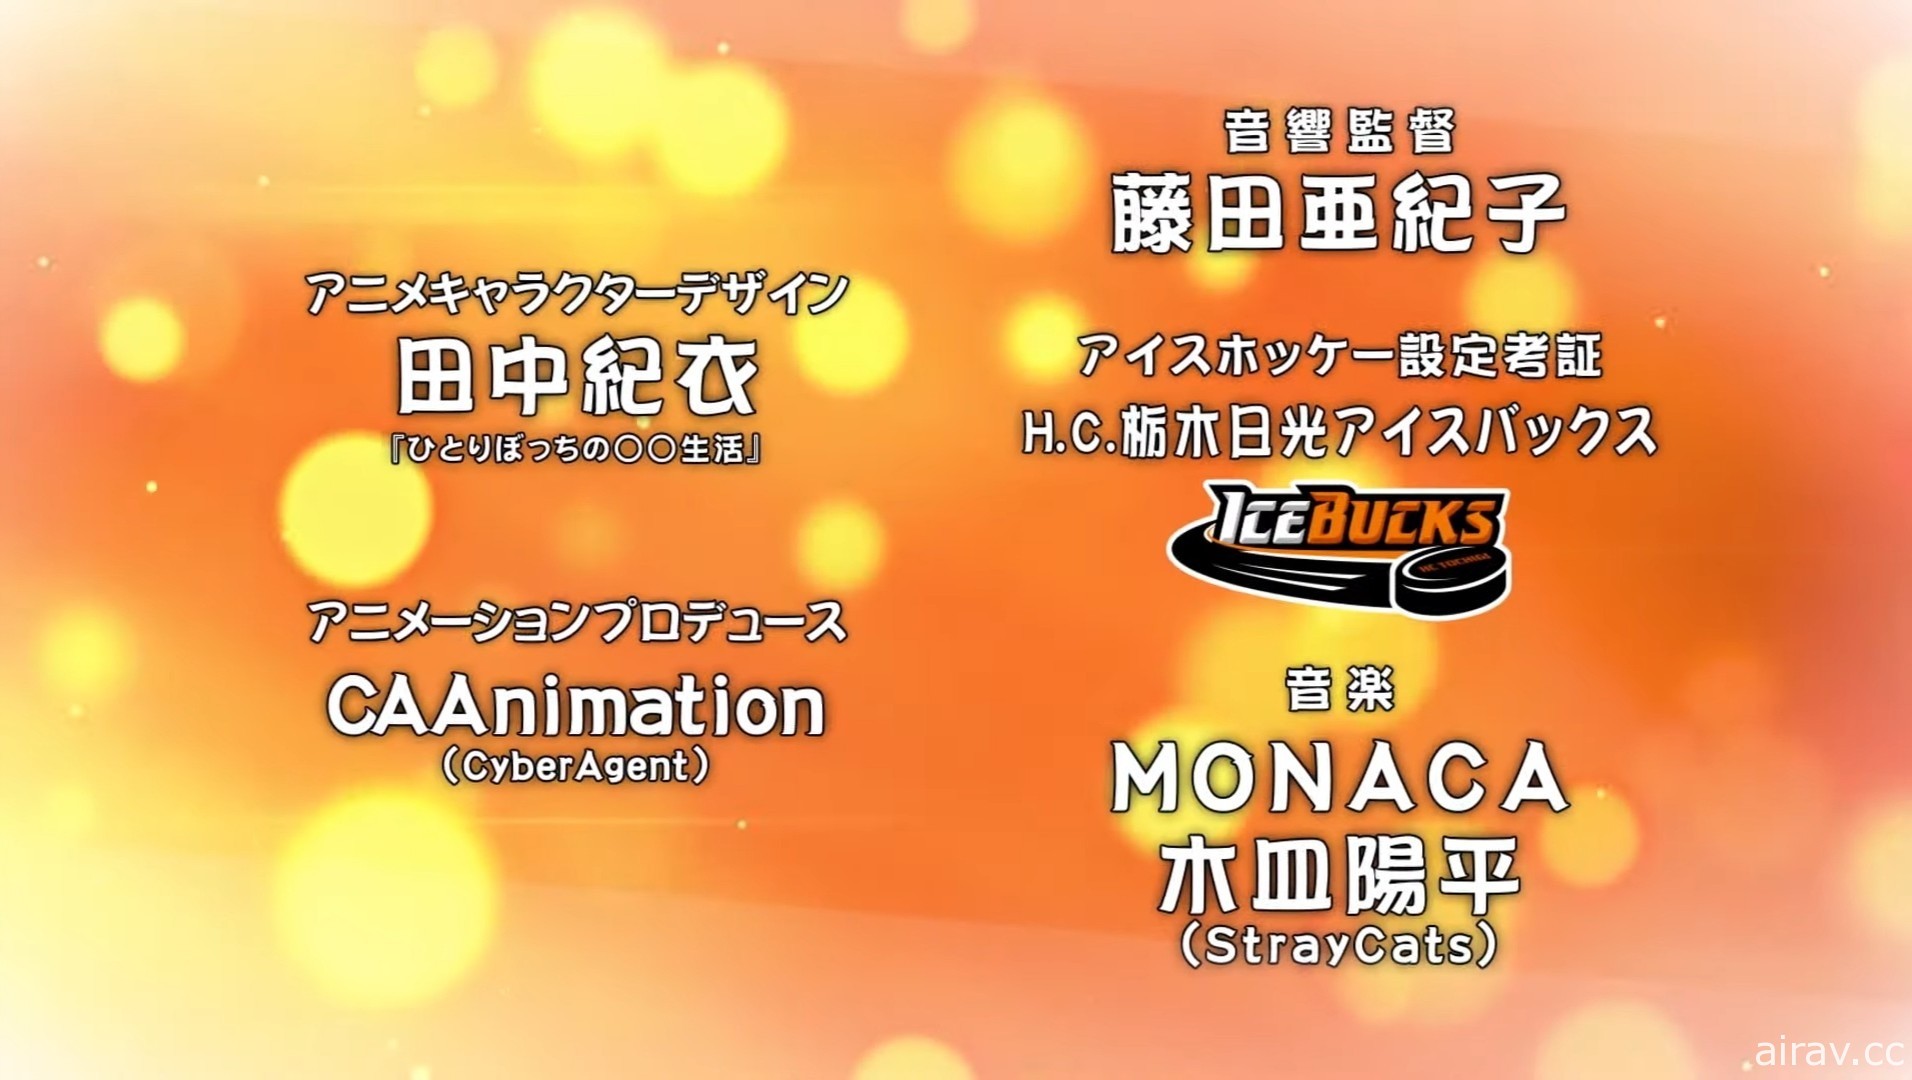 女子冰上曲棍球动画《橘色骄傲！》释出制作团队与声优情报 明年 10 月开播